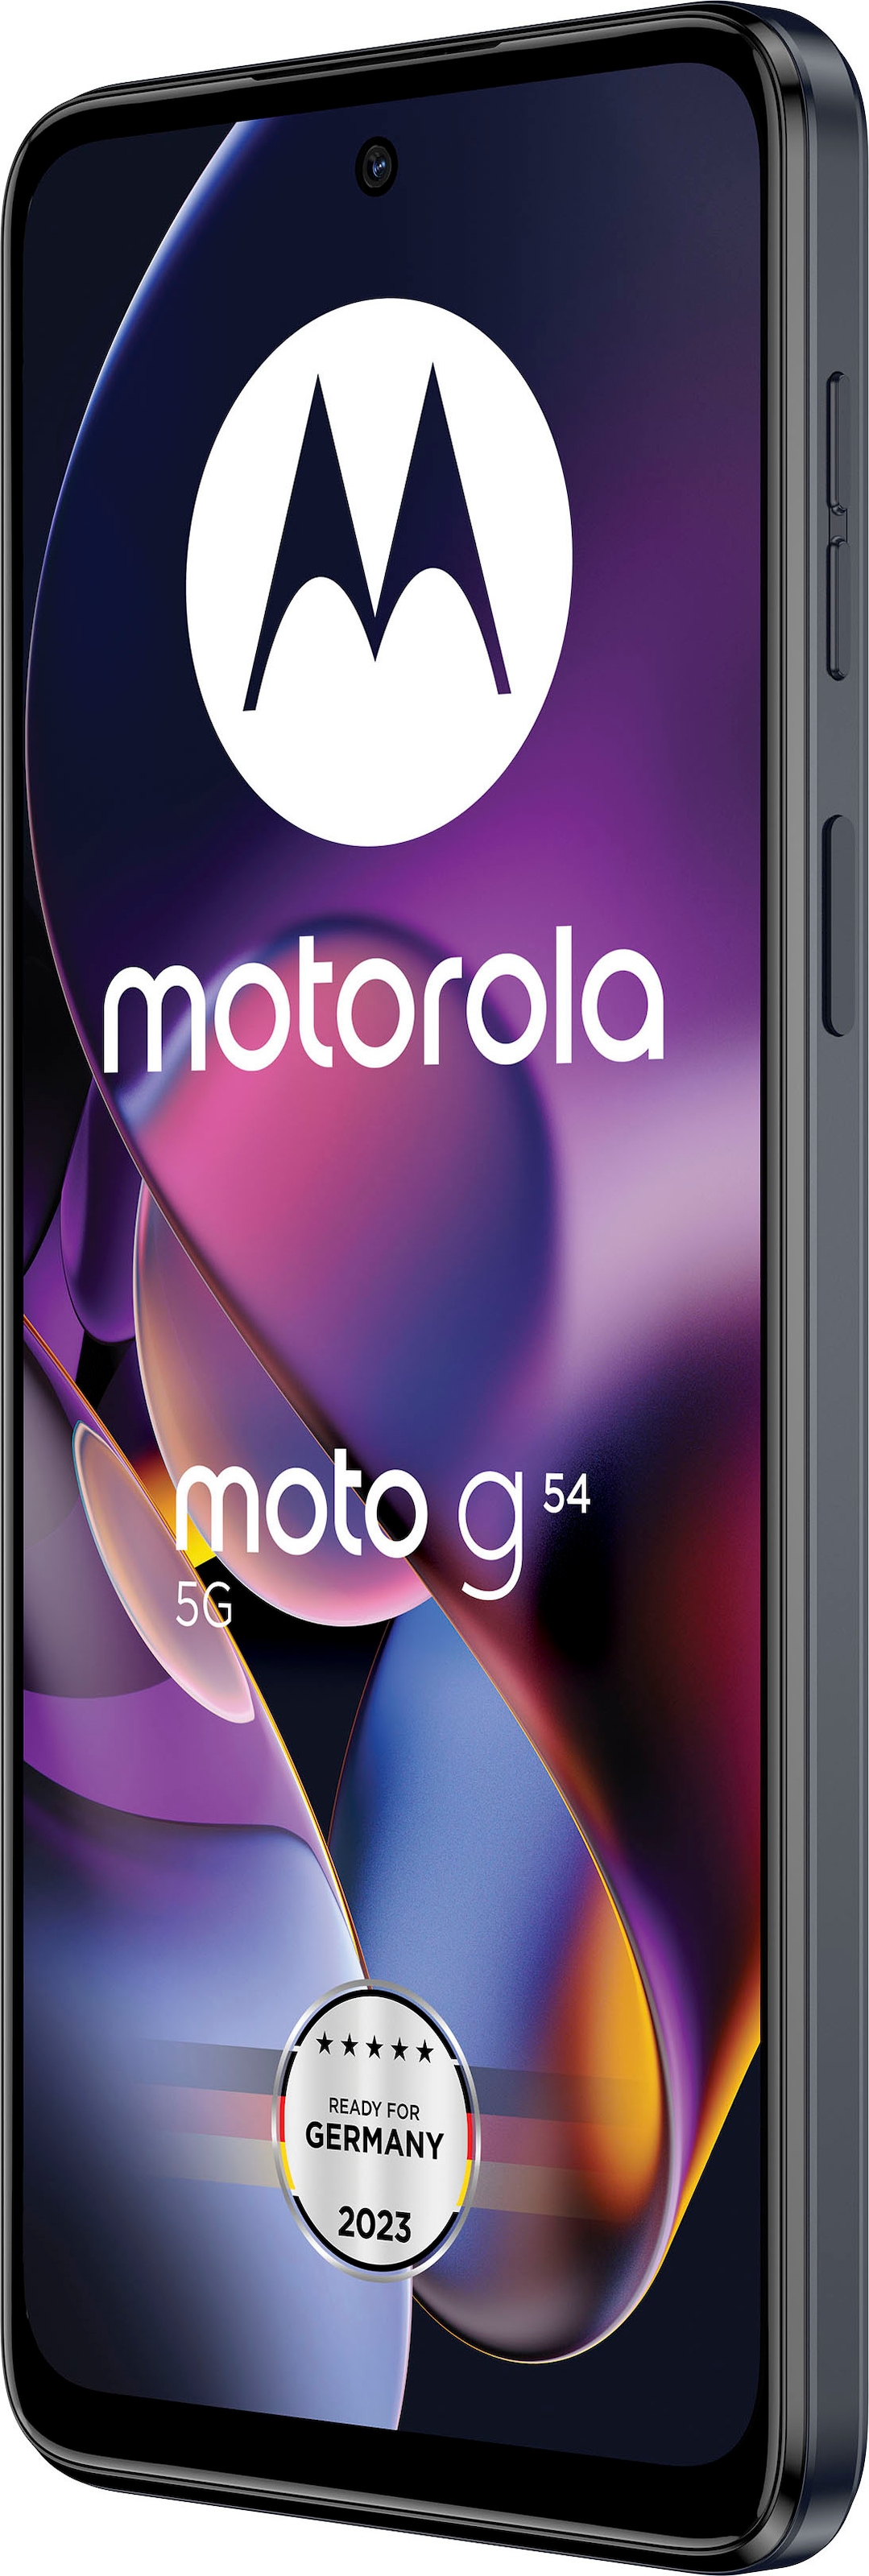 Motorola Smartphone GB Kamera 16,51 50 Speicherplatz, MP bestellen »MOTOROLA g54«, auf Zoll, grün, mint cm/6,5 256 moto Raten